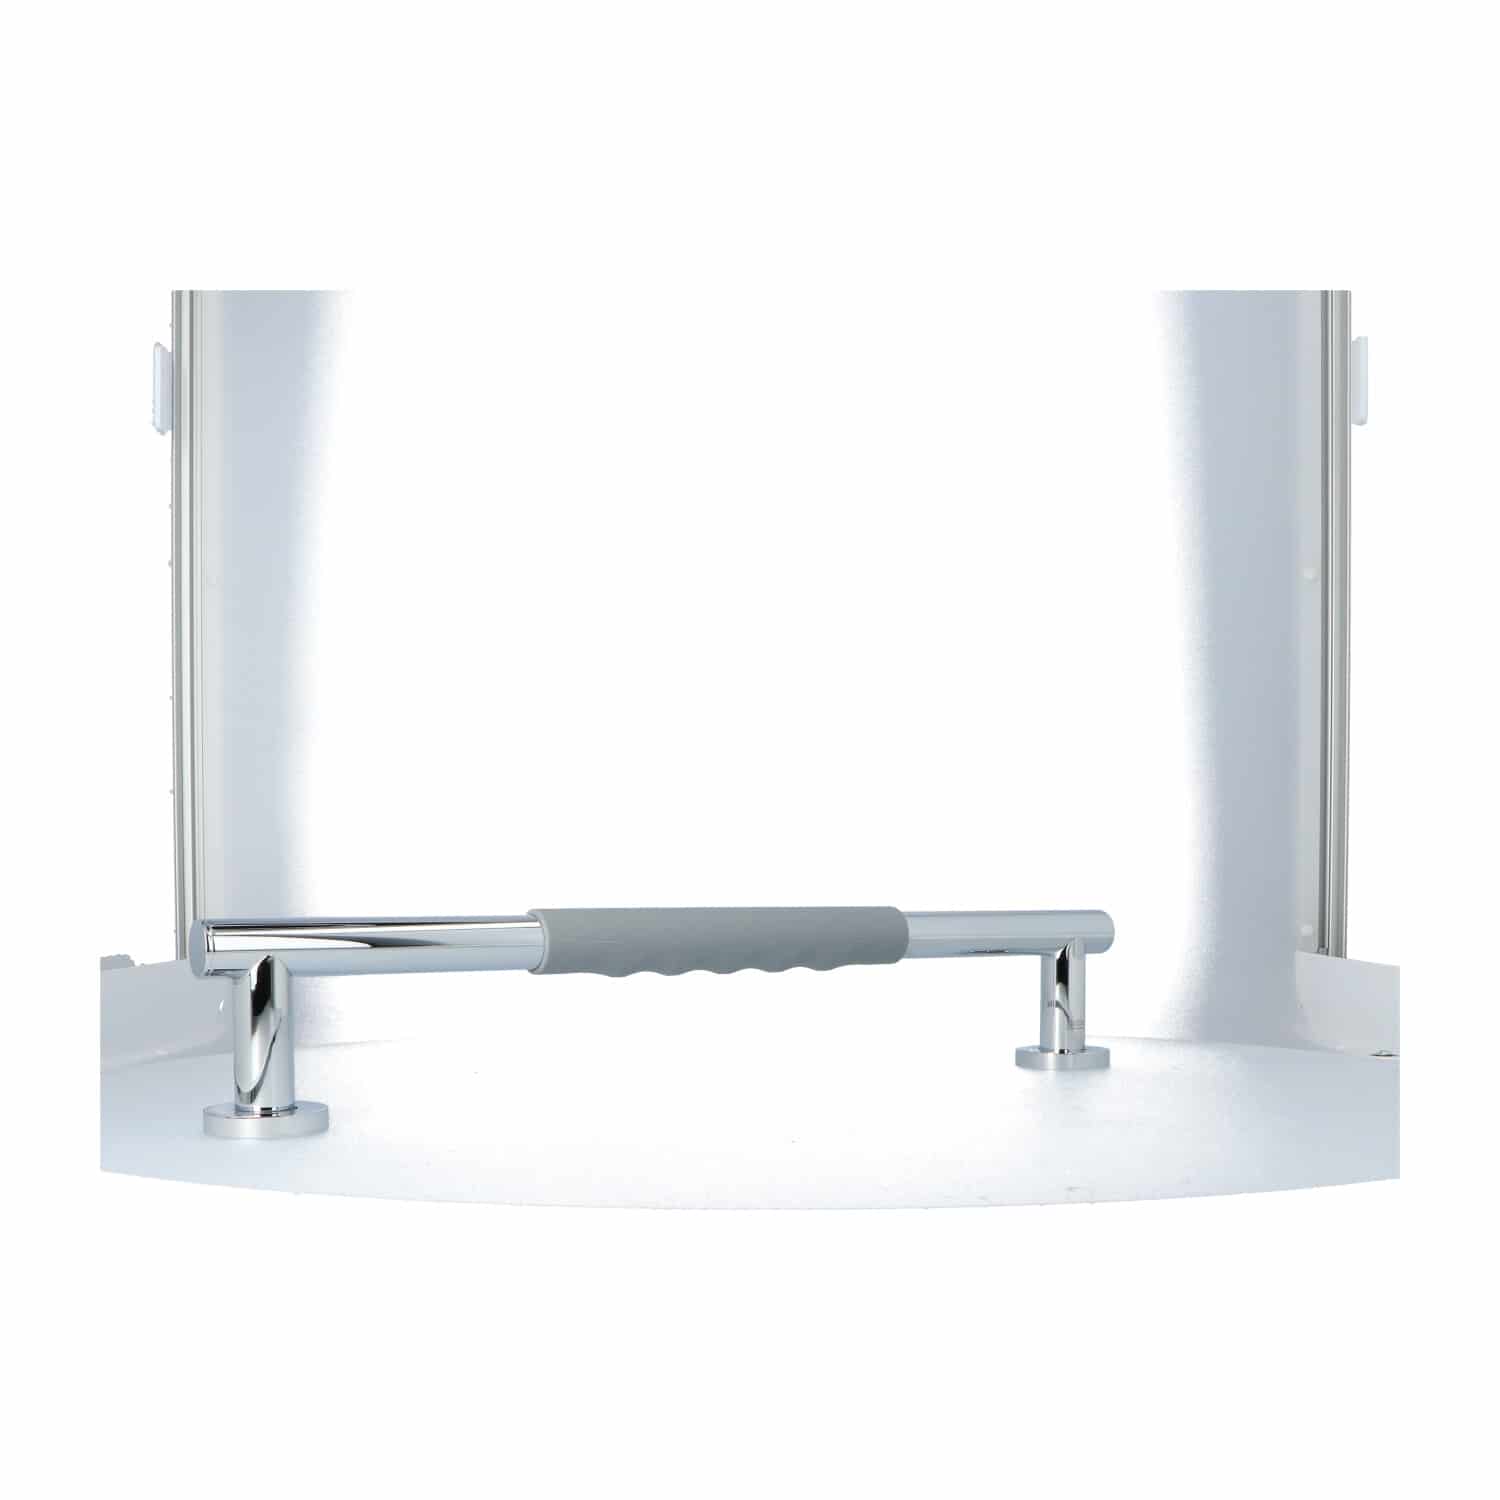 Luzzo® Fisso Soft Handgreep Badkamer/Toiletgreep 45 cm - Chroom/Grijs - Handgreep douche of toilet